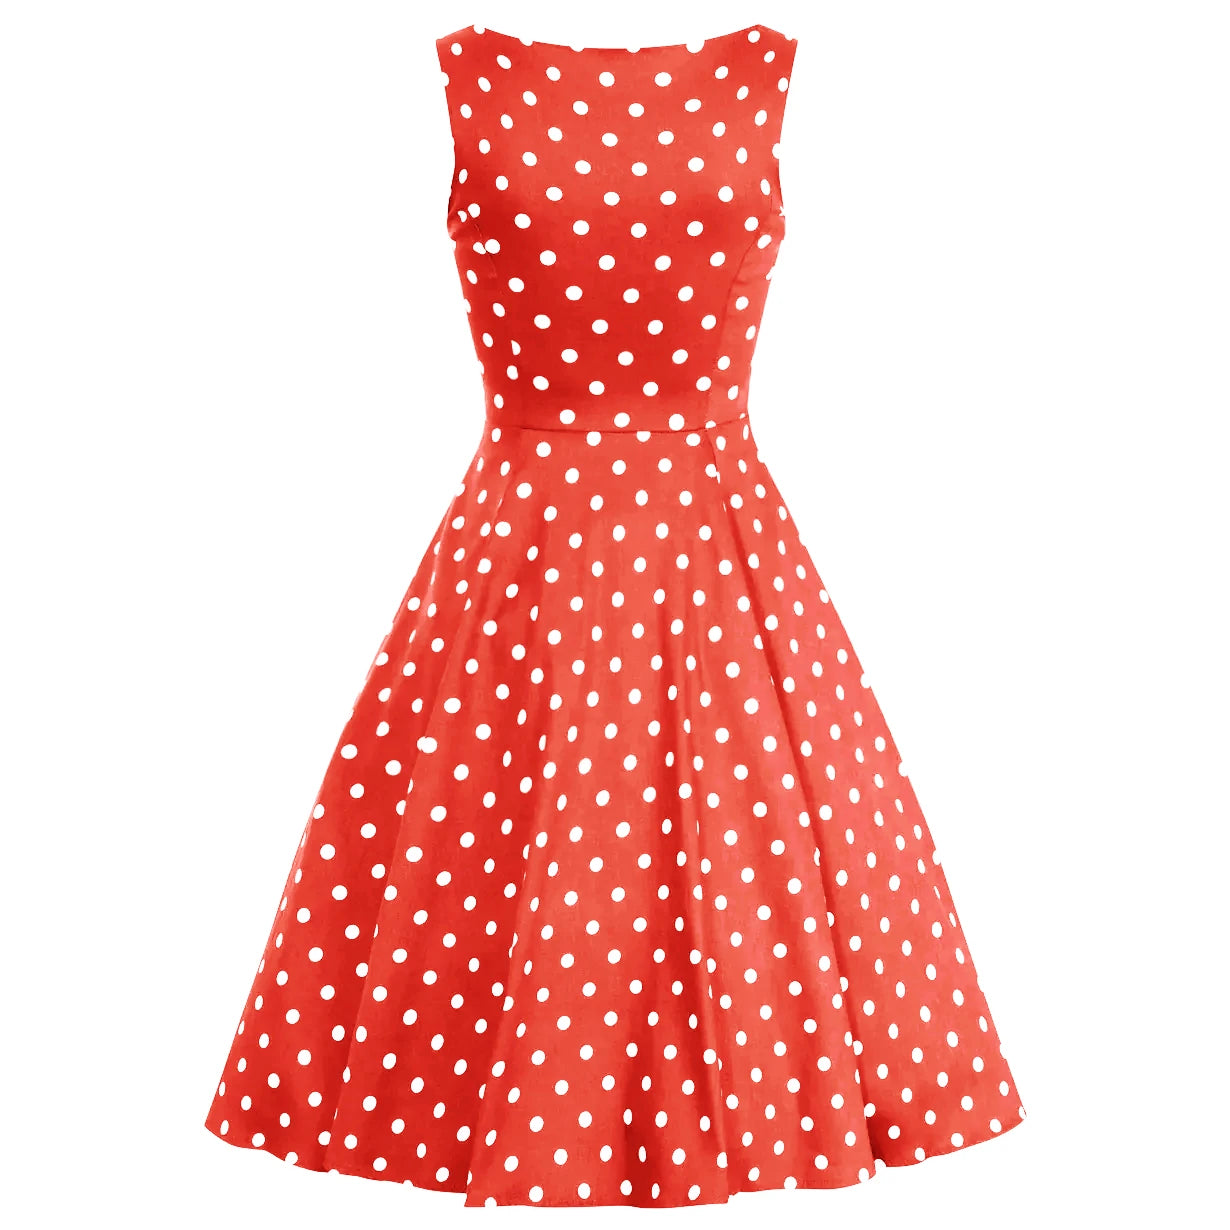 Red & White Polka Dot Audrey Hepburn Style 50s Swing Dress